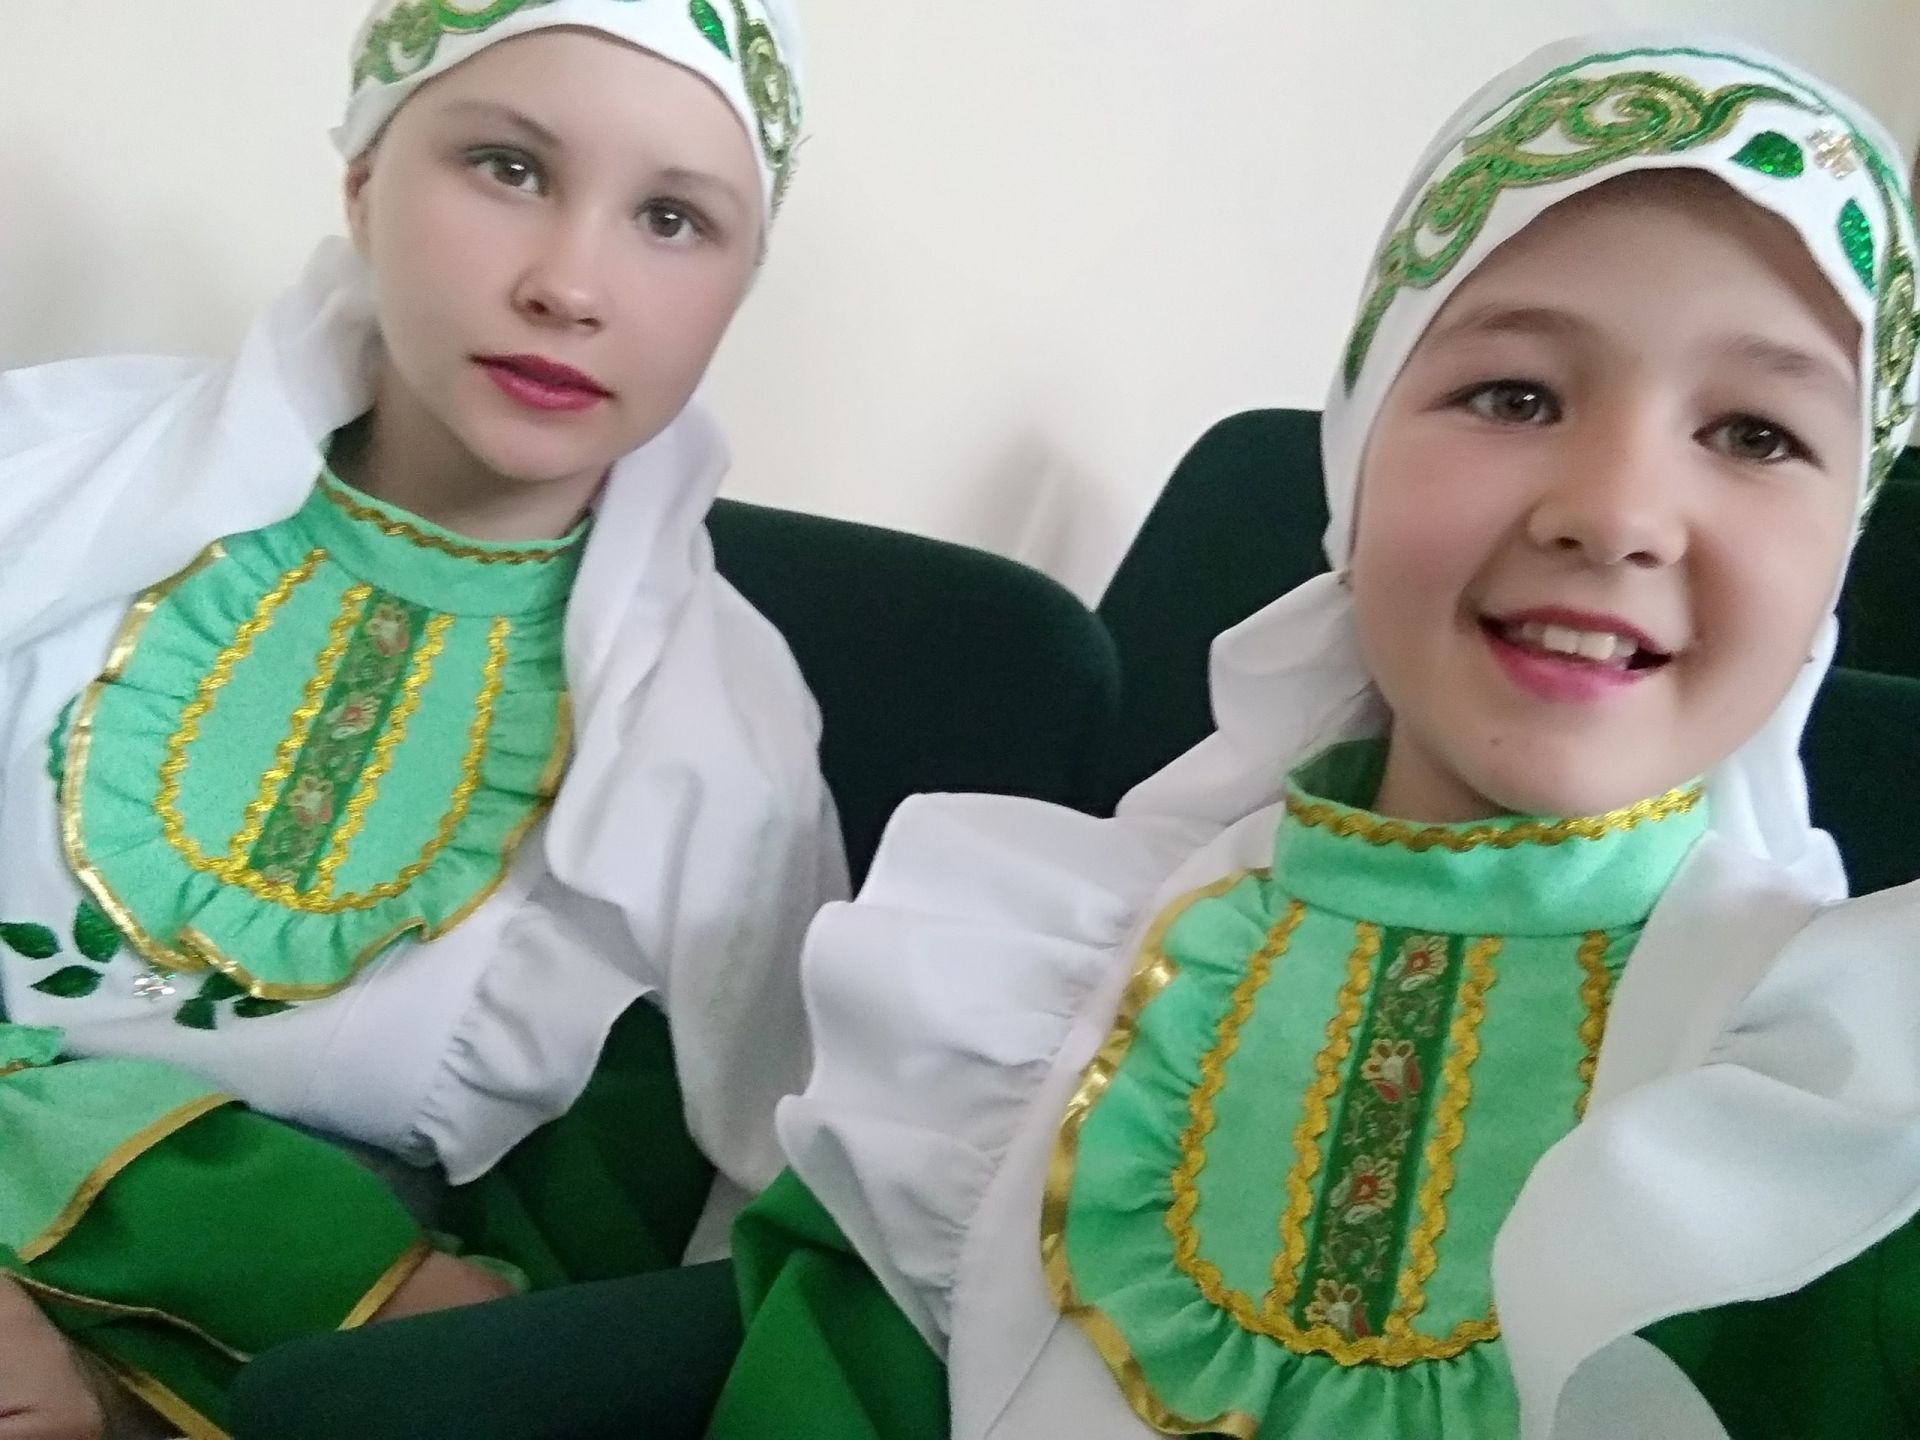 Дети из Чувашских Кищак Буинского района исполняют чувашский, татарский, русский, удмуртский танцы (фоторепортаж)